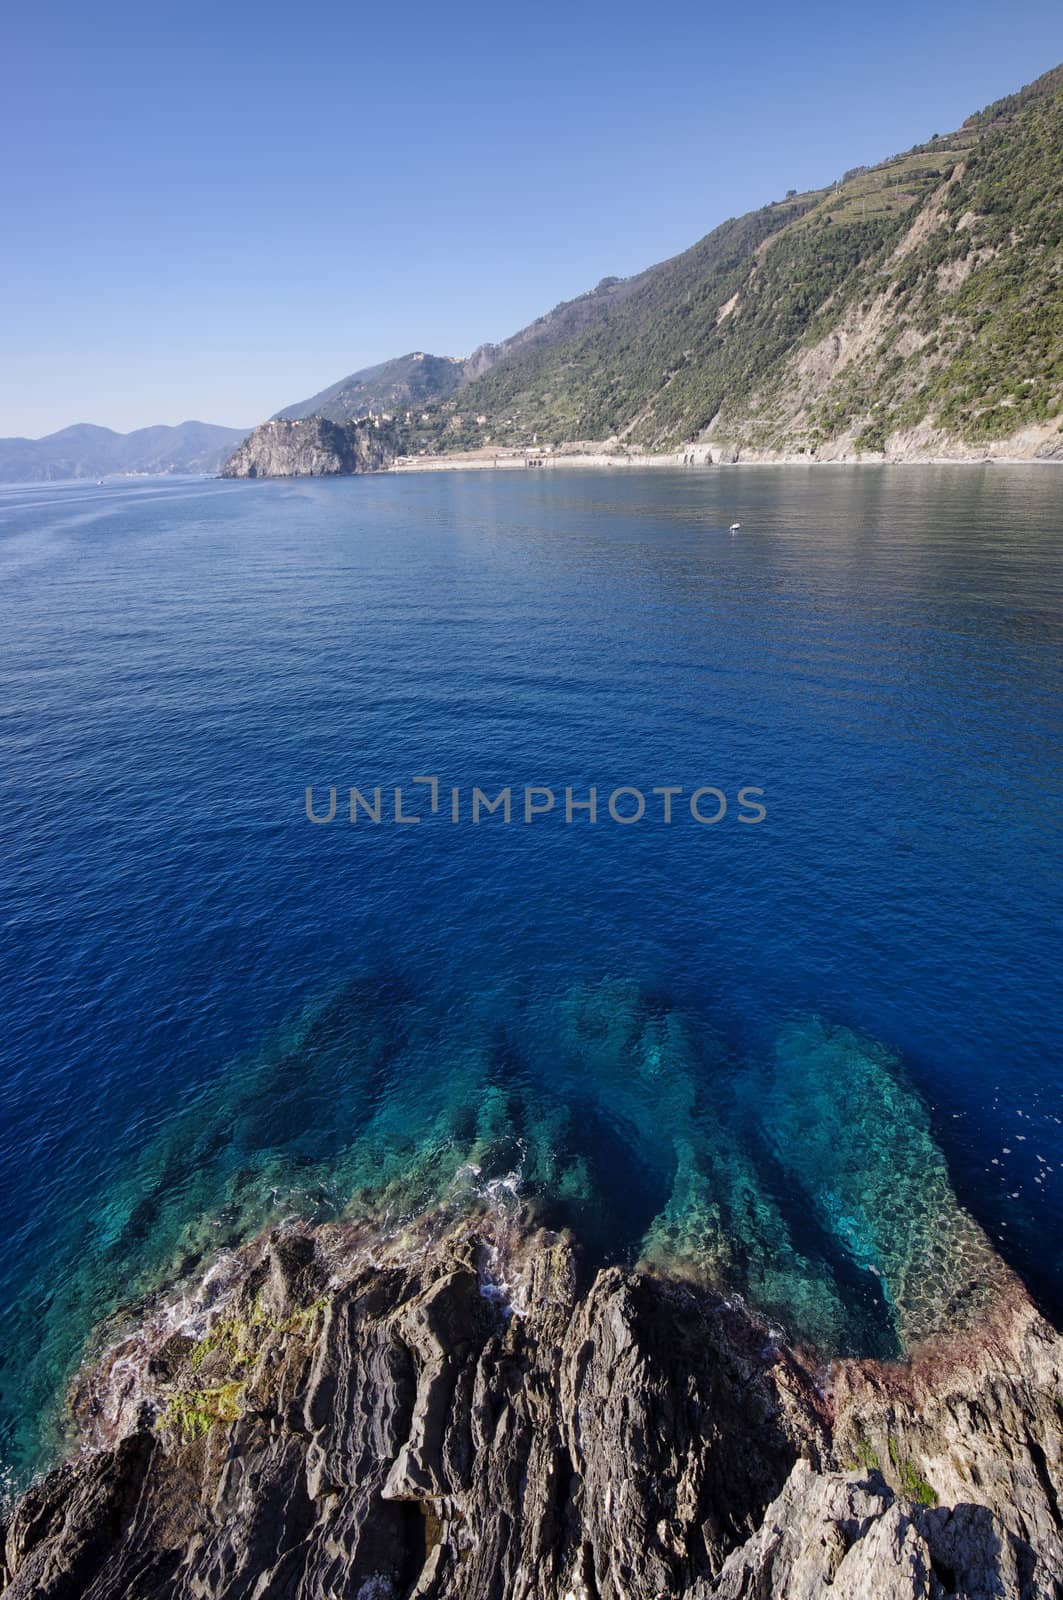 Mediterranean sea and coast of Italy Cinque Terre National Park